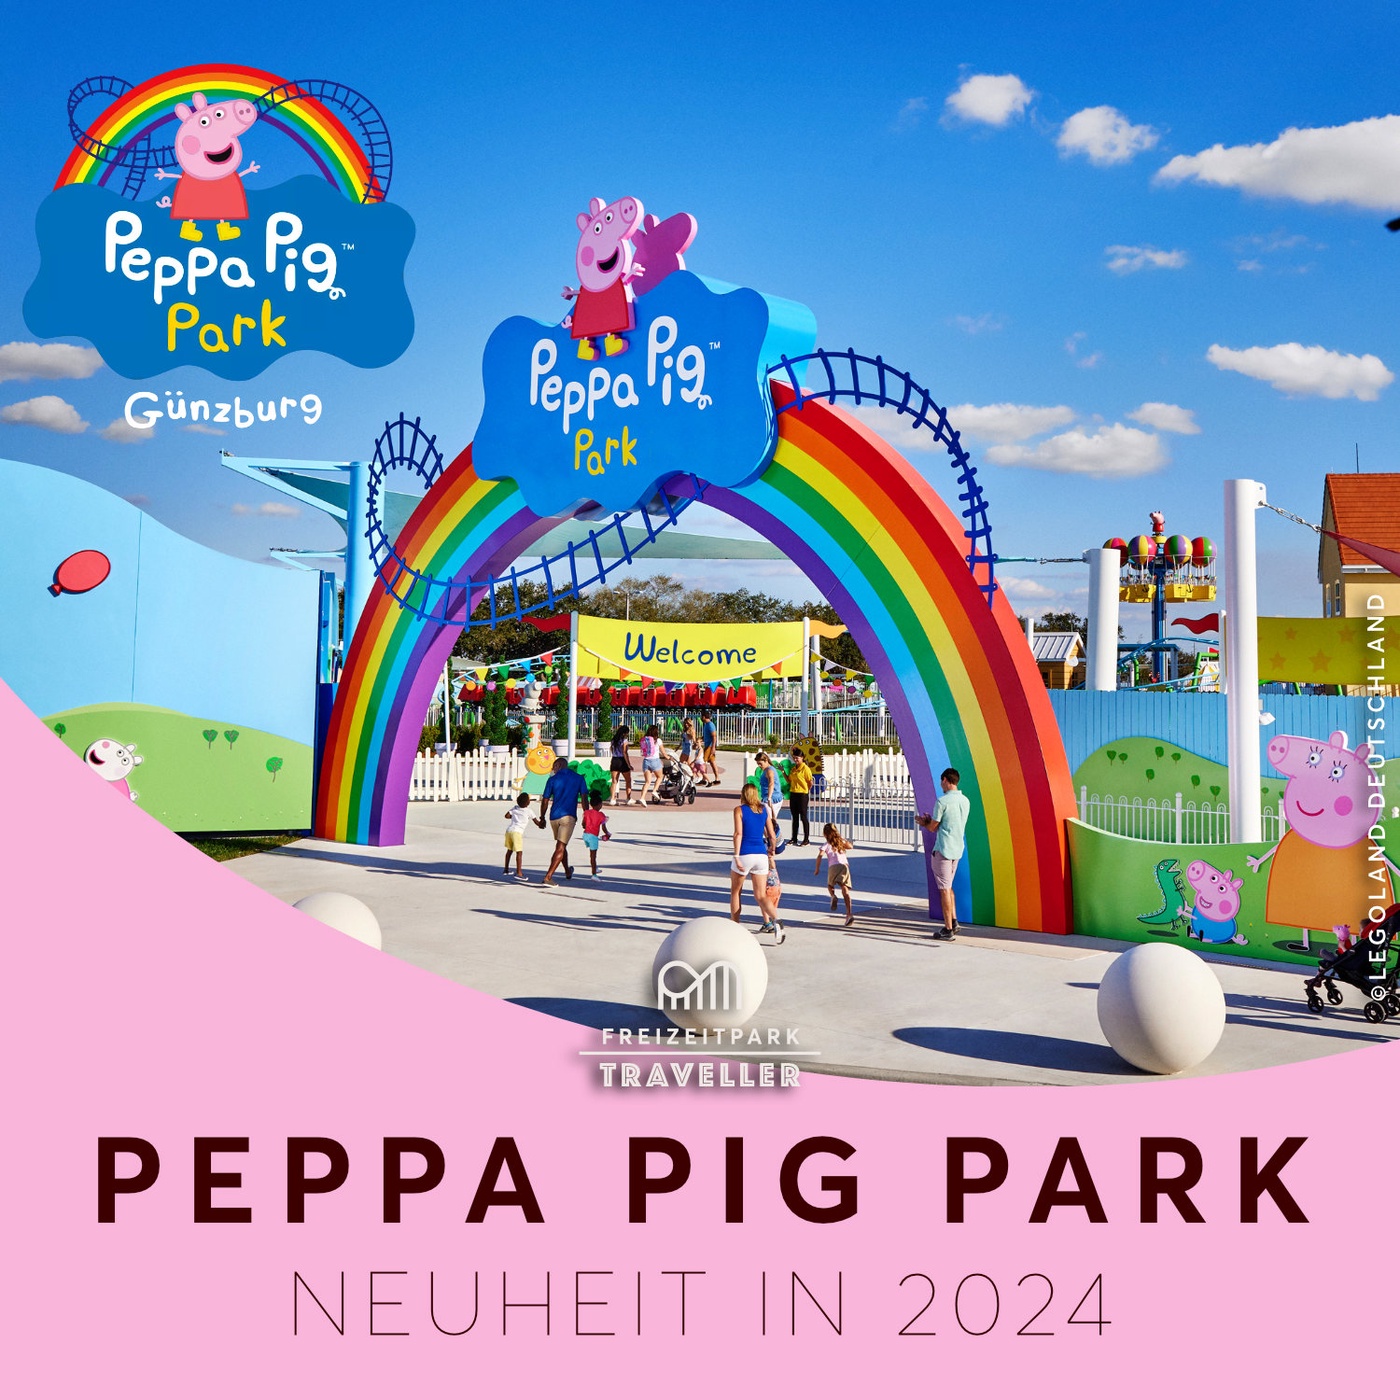 PEPPA PIG Park - Neuer Freizeitpark in 2024